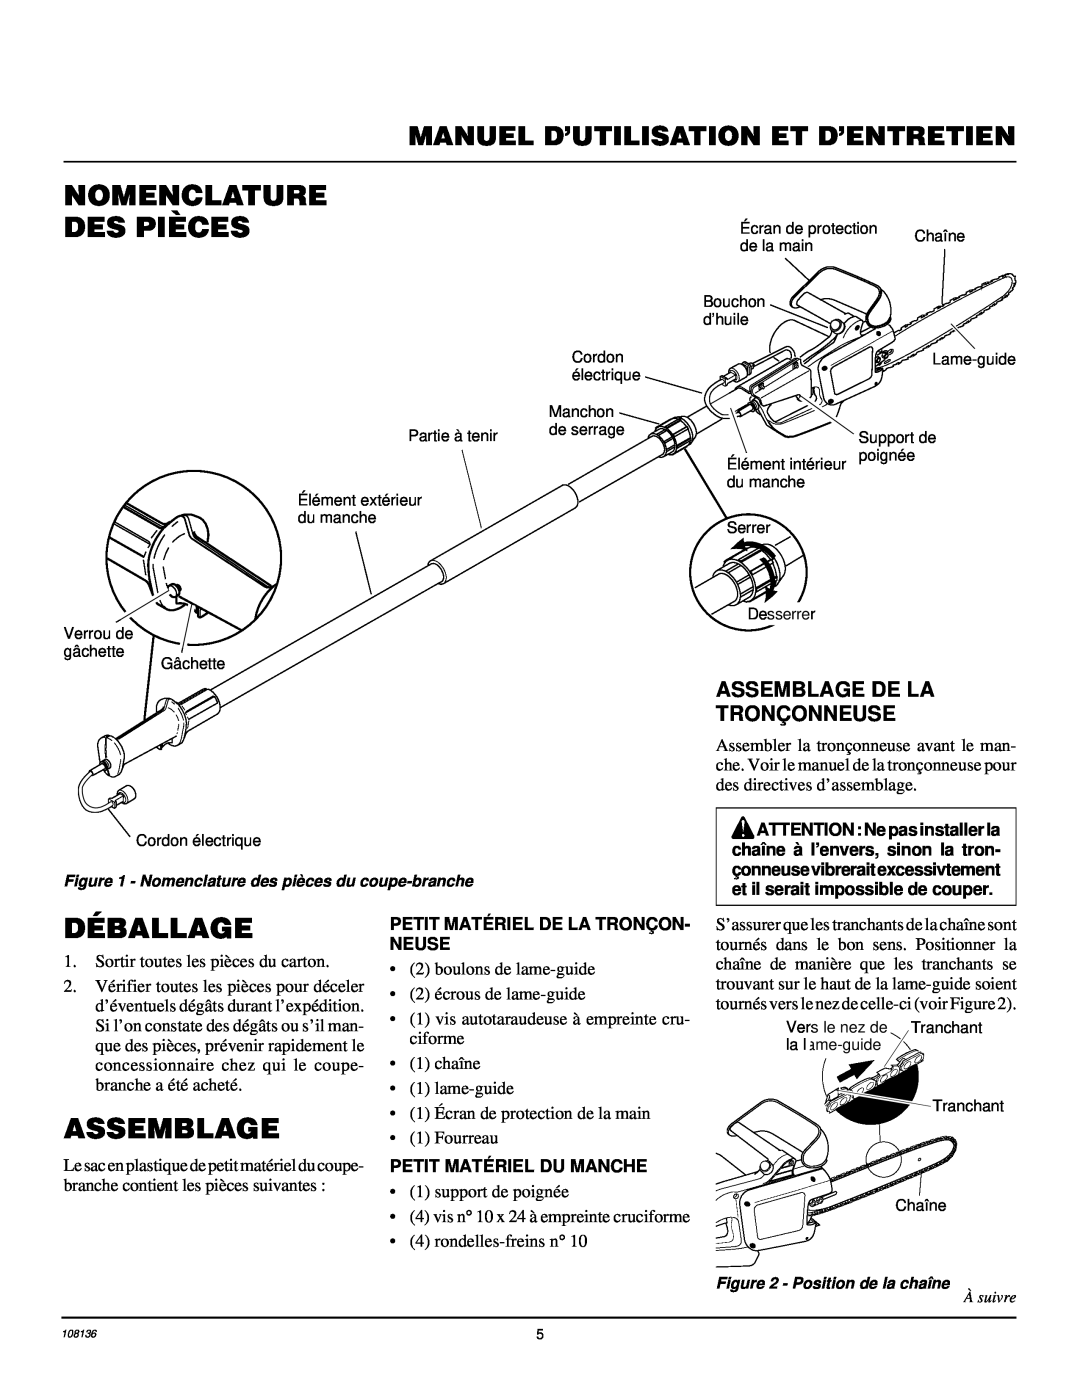 Remington RPS96 Nomenclature Des Pièces, Déballage, Assemblage De La Tronç Onneuse, Position de la chaîne, À suivre 